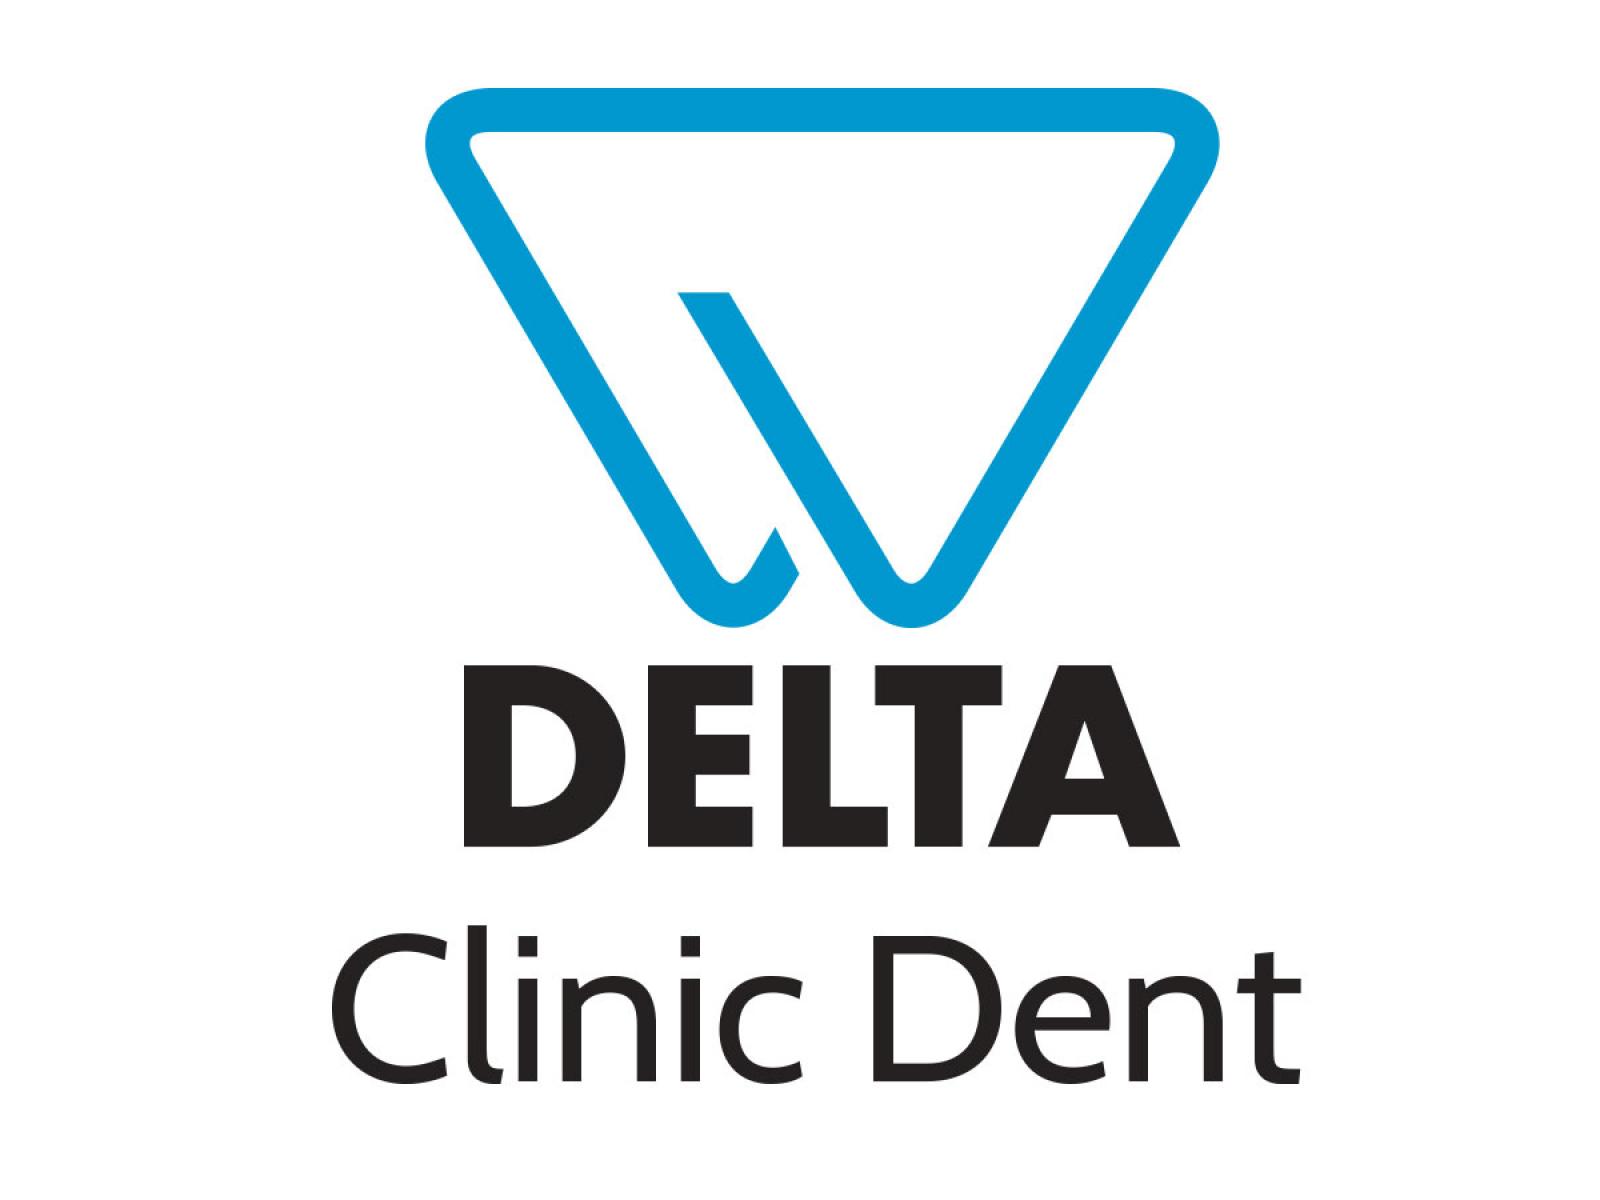 Delta Clinic Dent - Logo-2.1.jpg